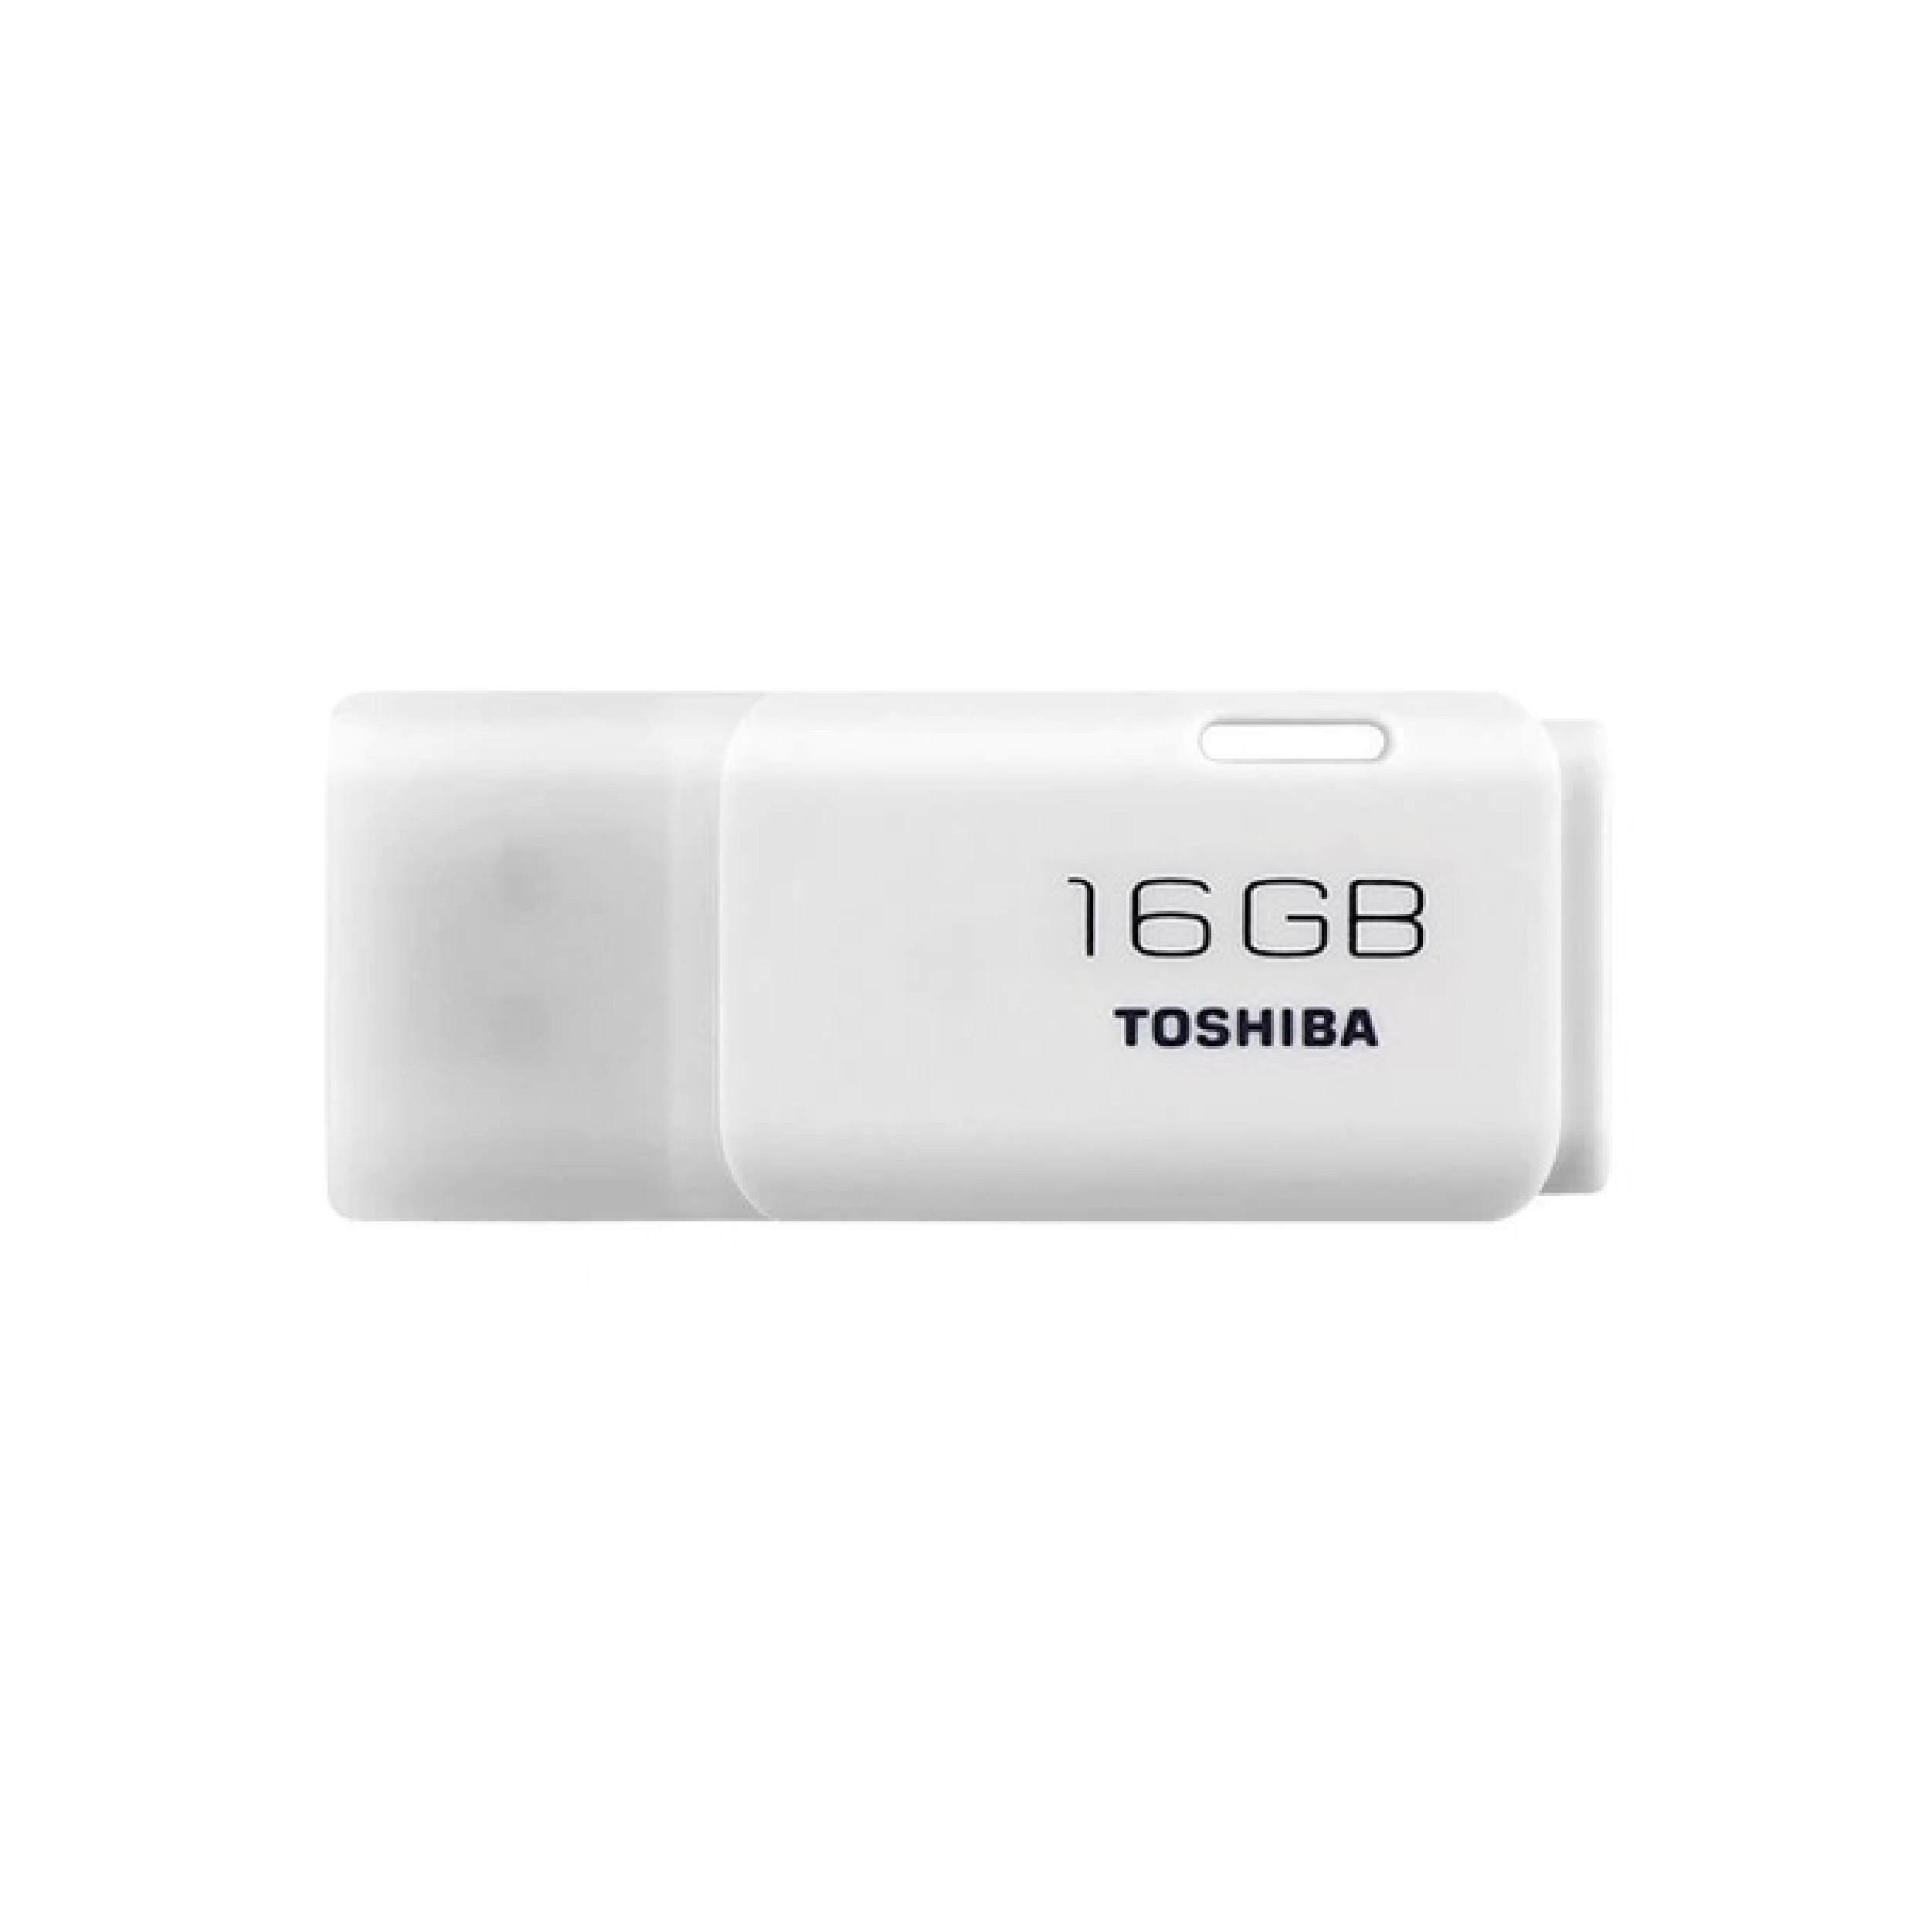 Toshiba TransMemory, 16GB, USB 2.0, USB Flash Drive, White (U202)